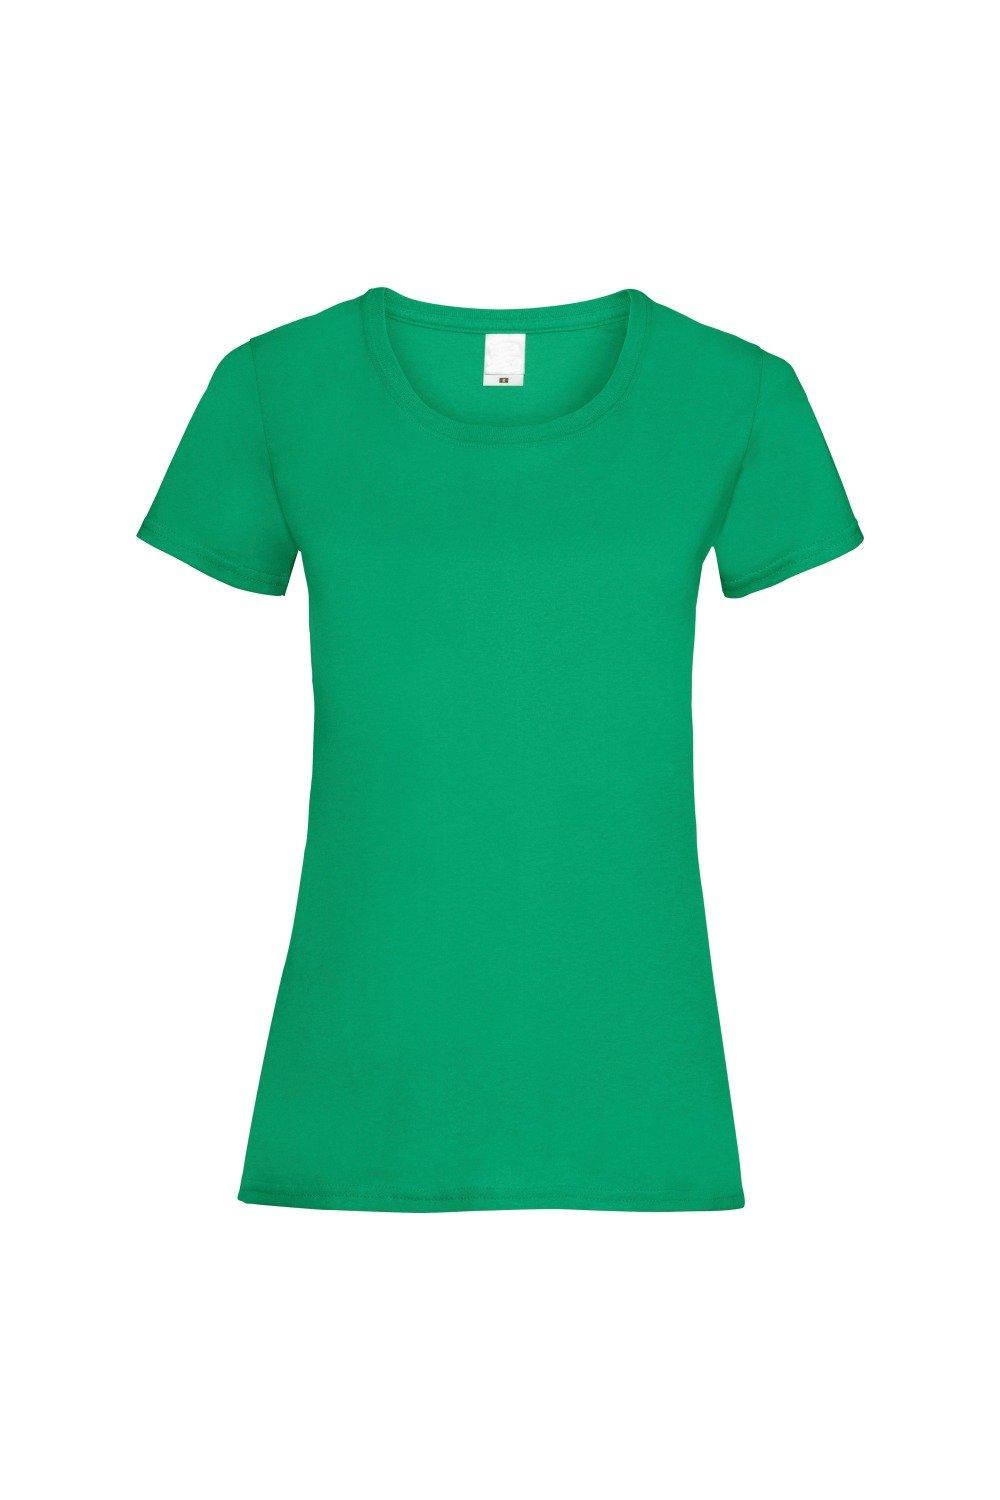 Повседневная футболка с короткими рукавами Value Universal Textiles, зеленый футболка женская mia серый меланж размер xl